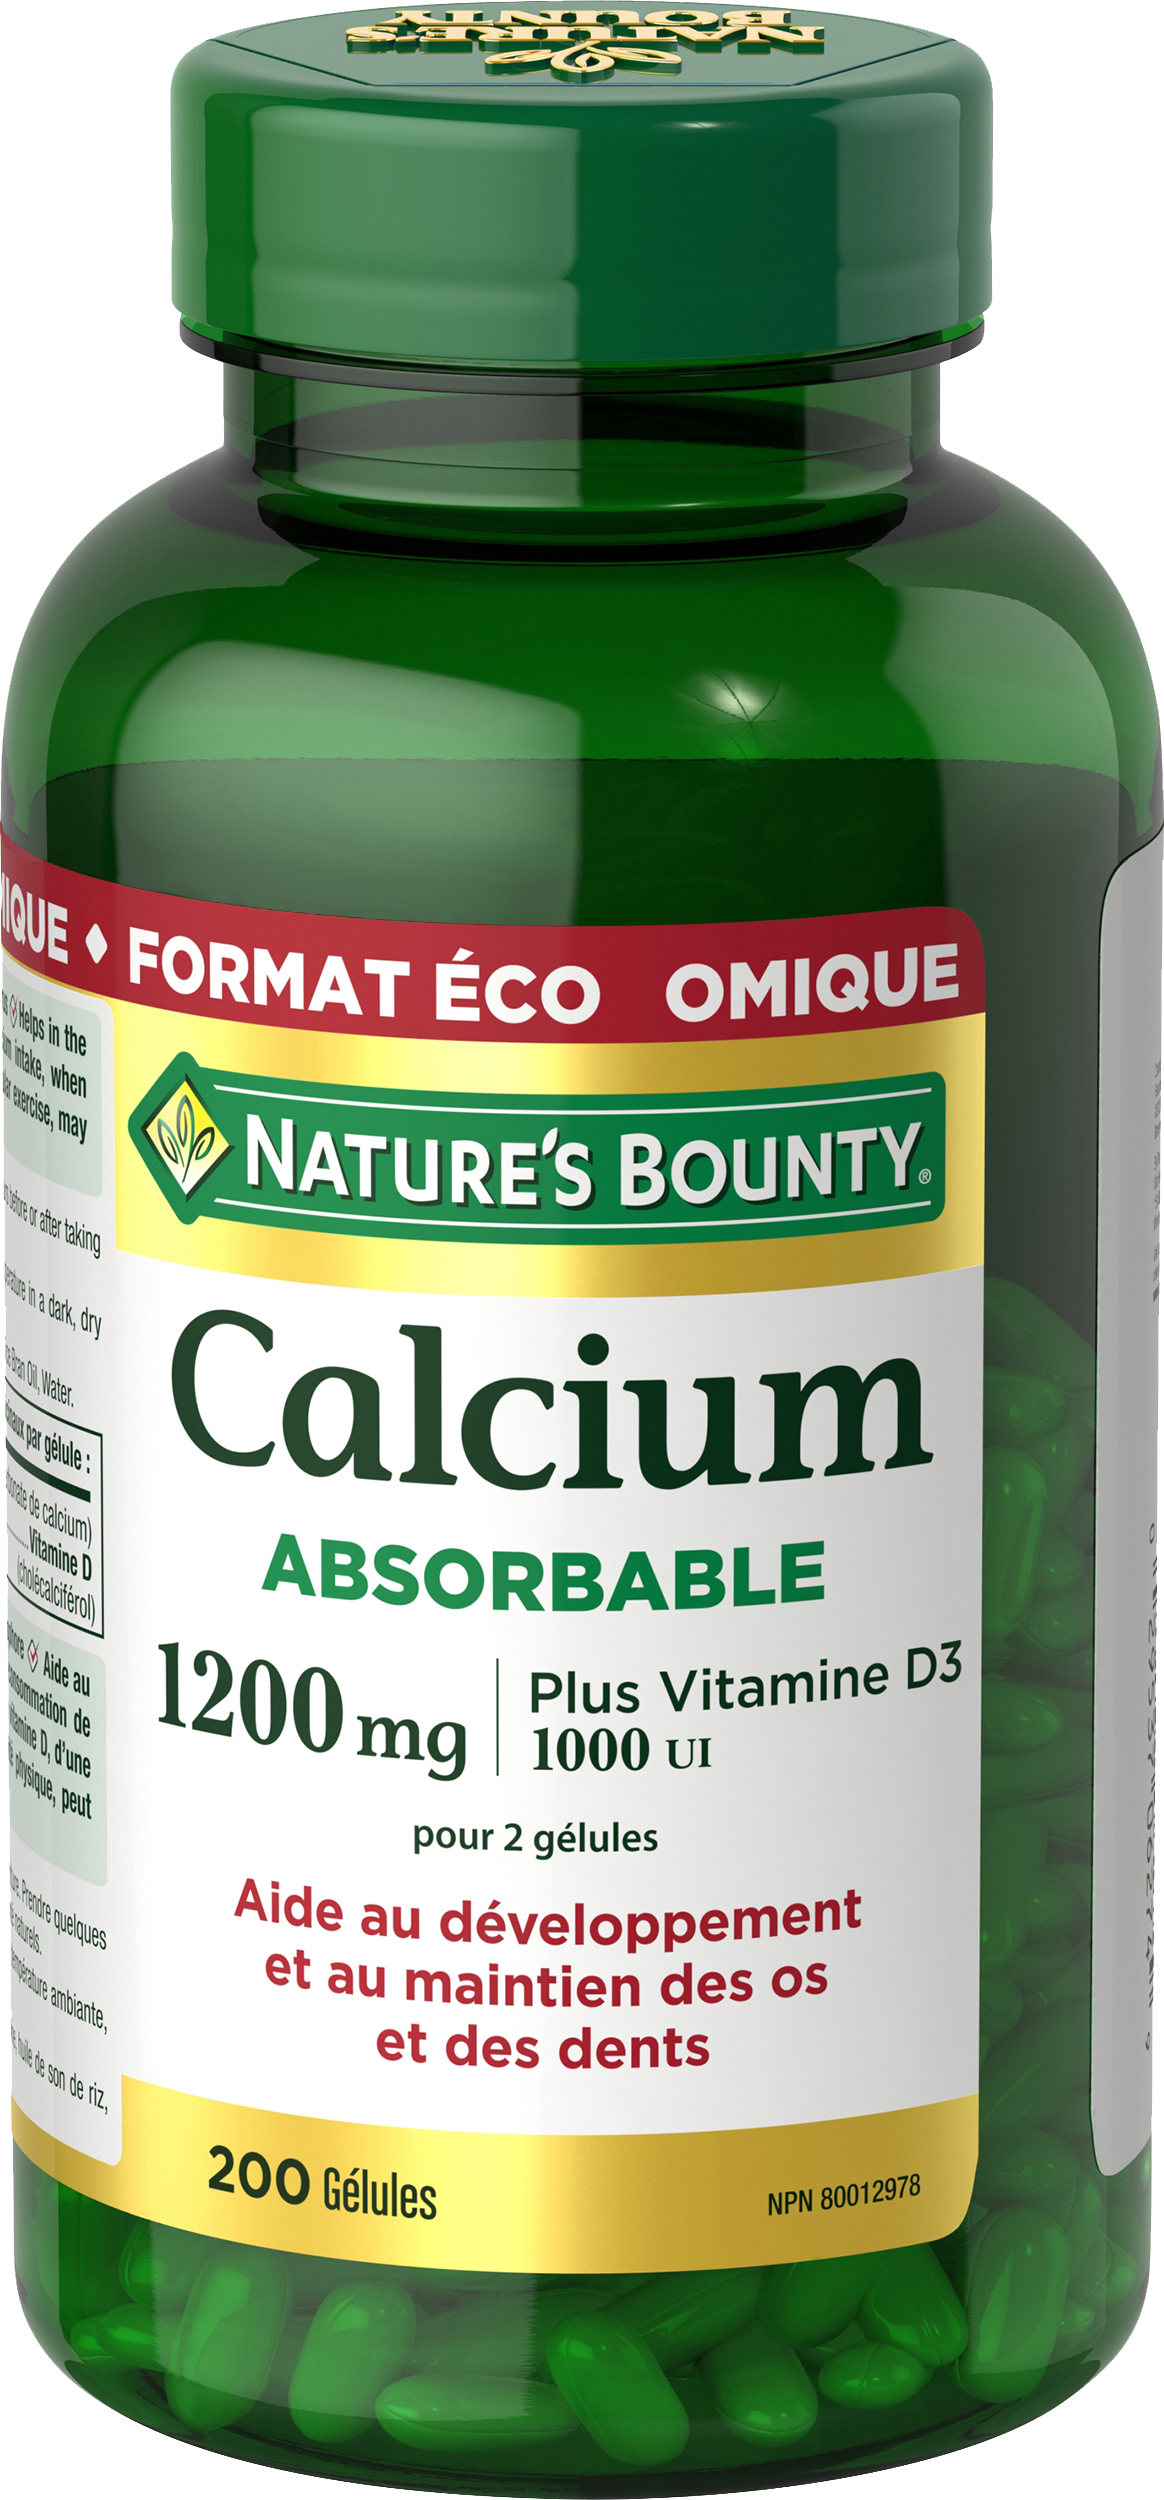 Calcium Absorbable plus Vitamine D3